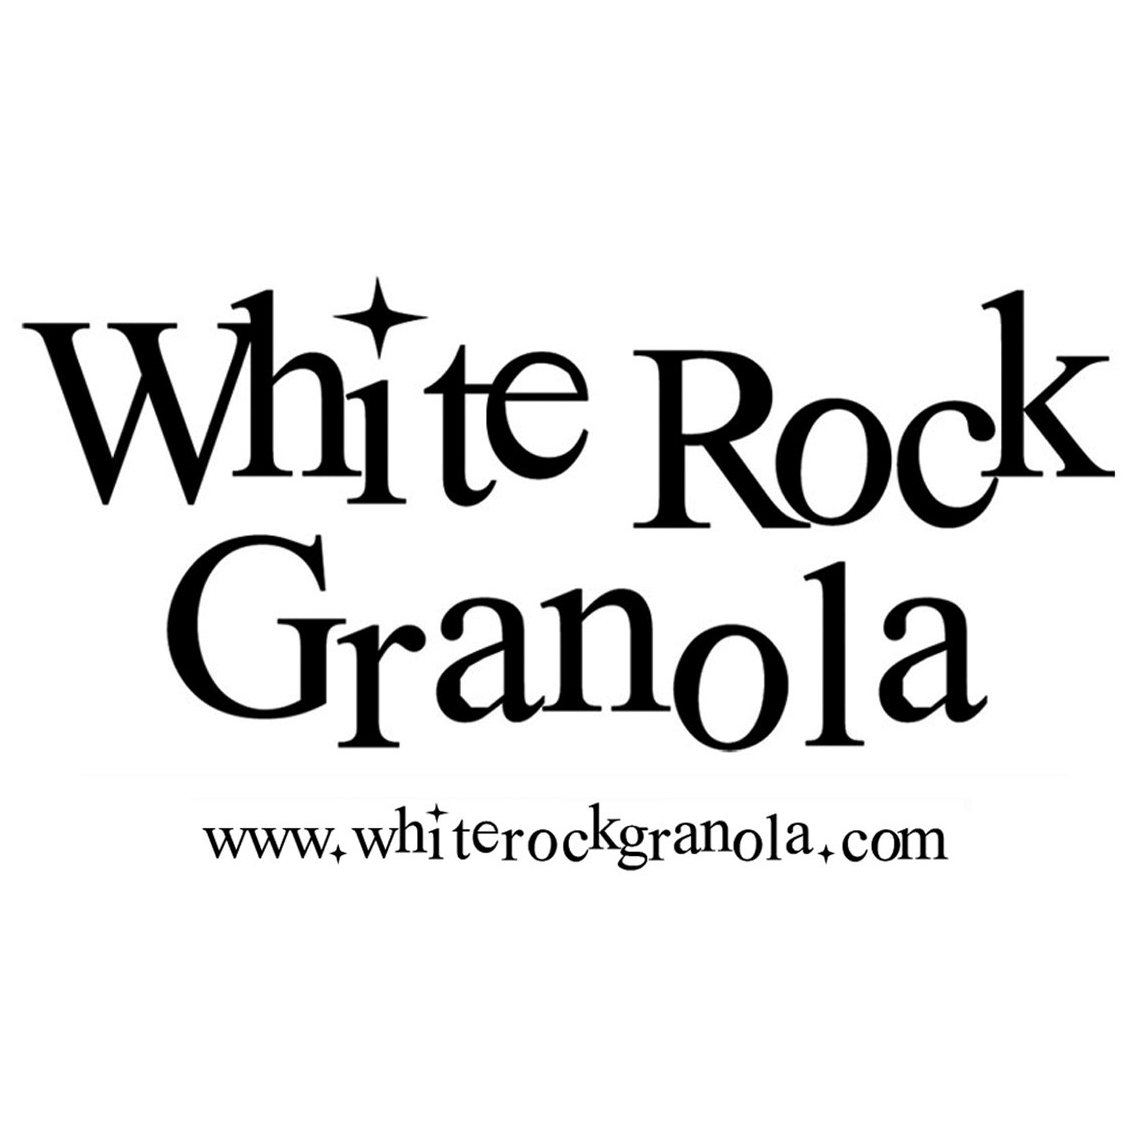 White Rock Granola